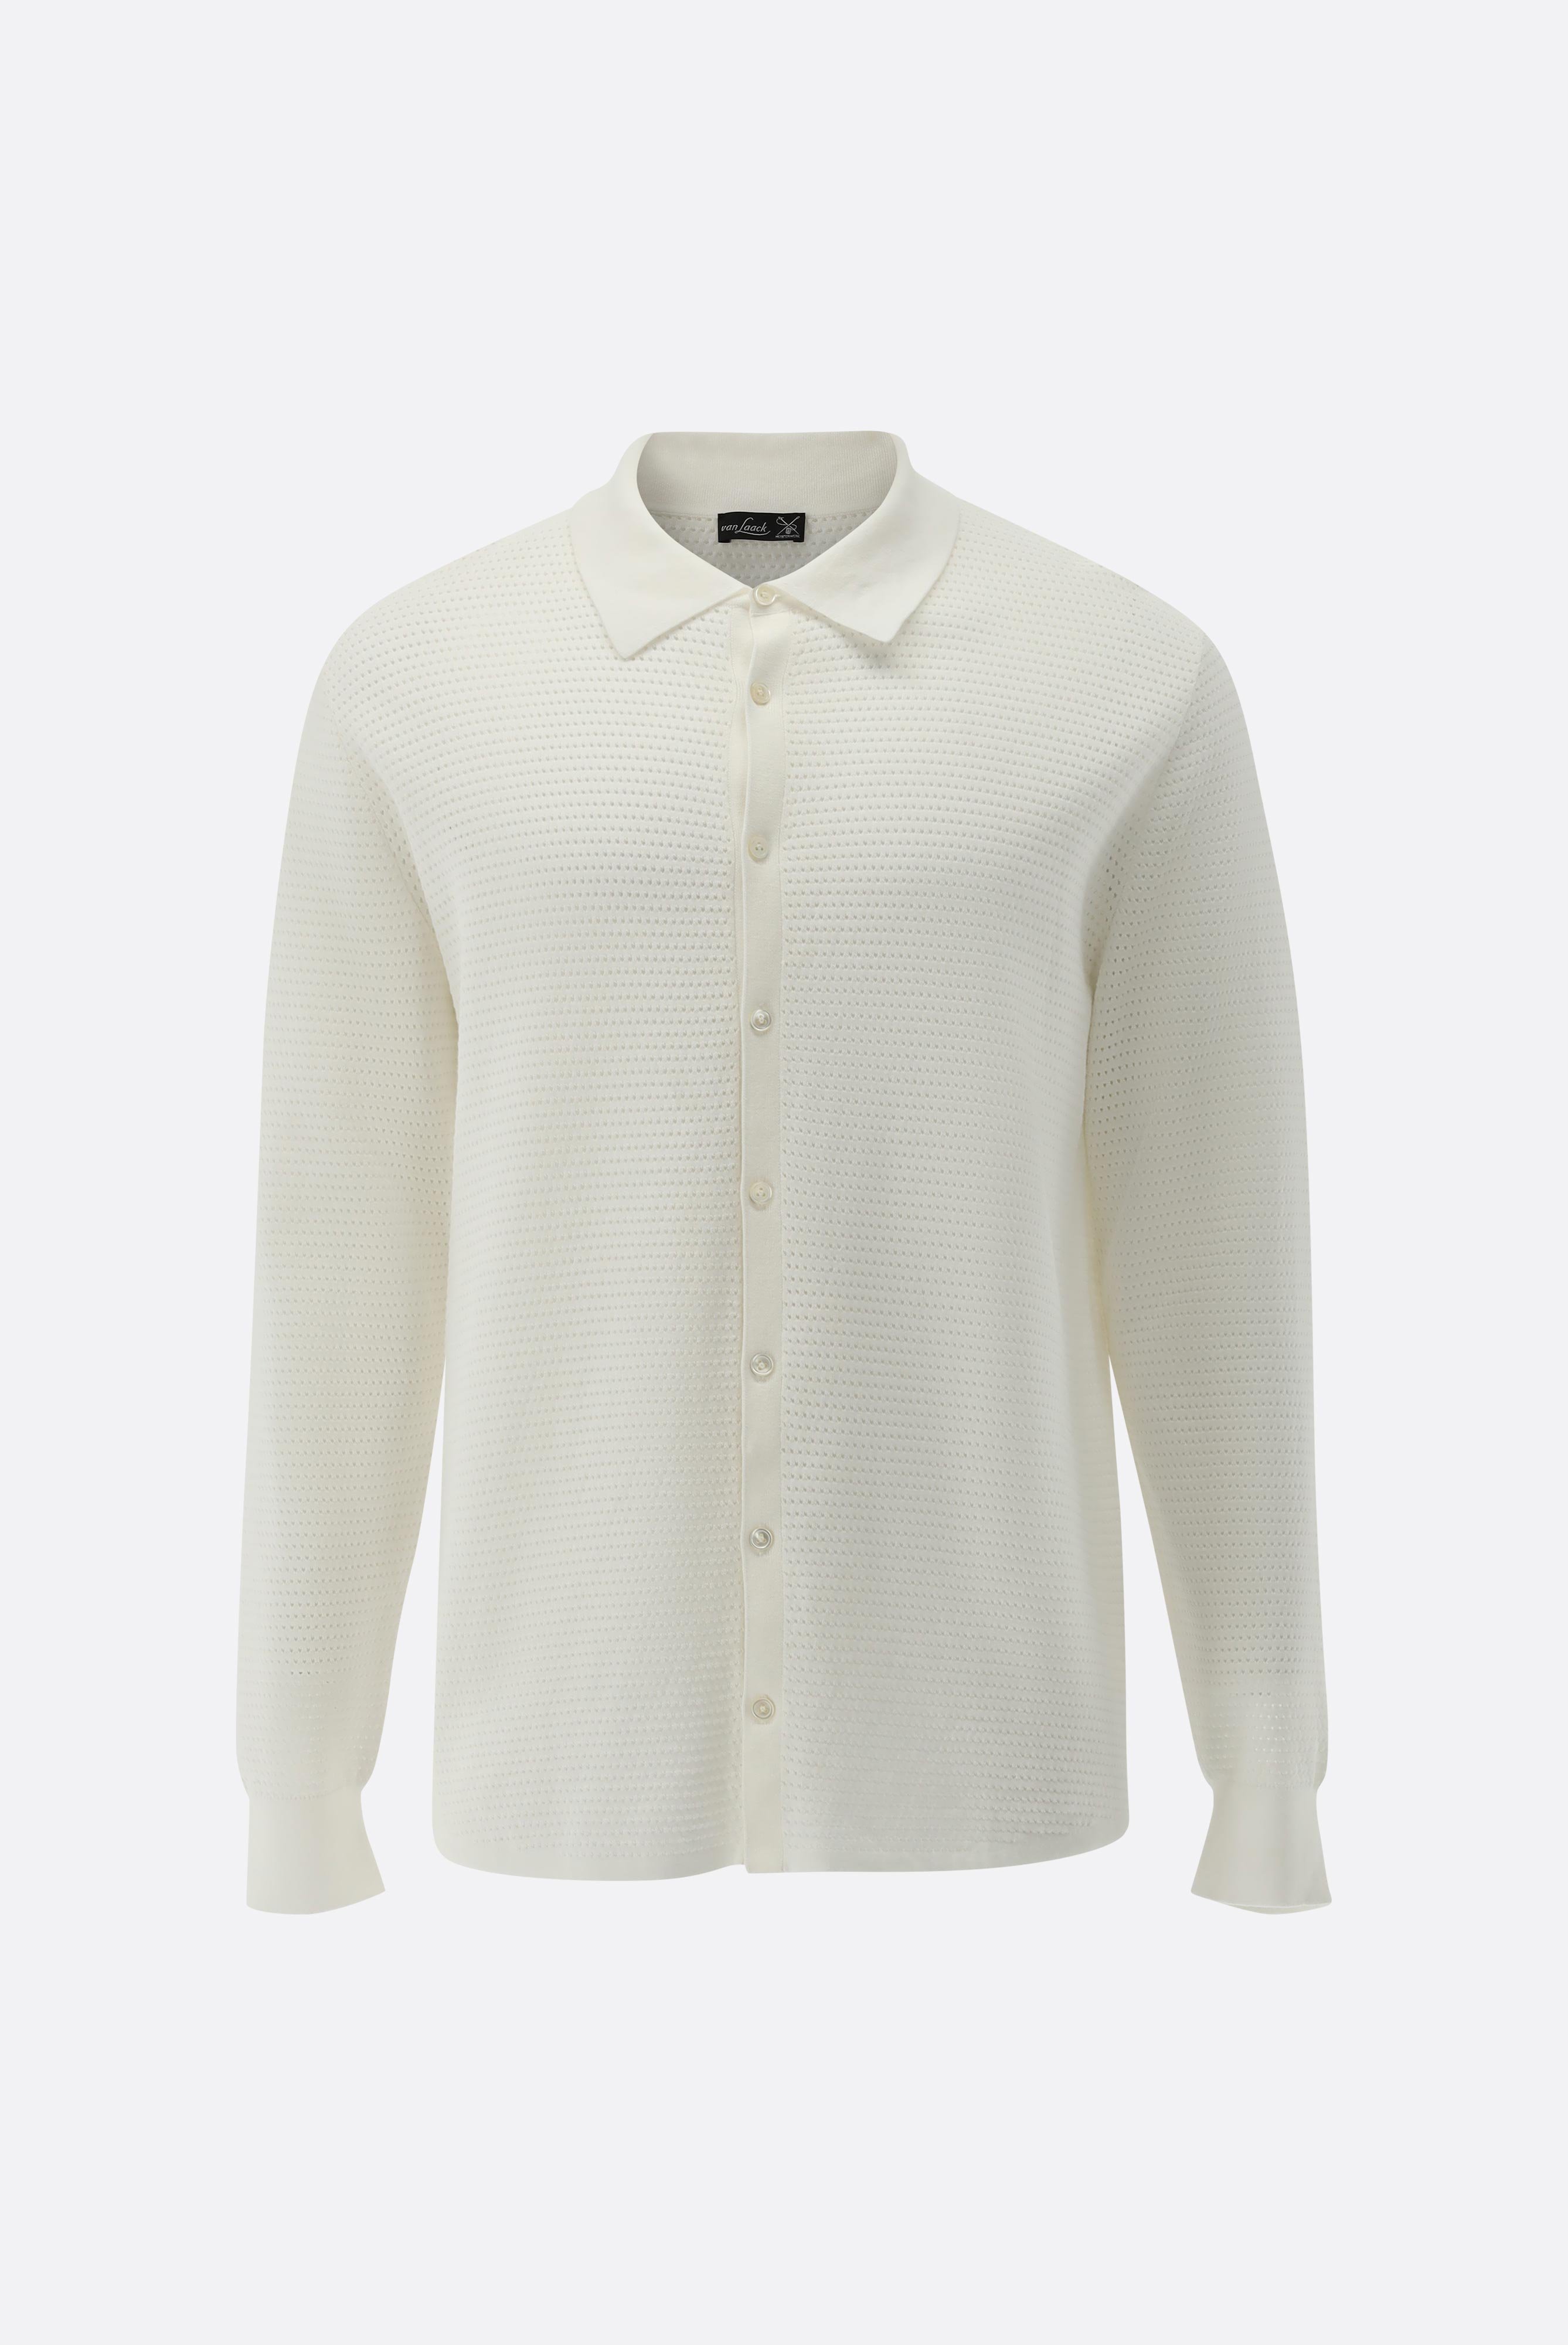 Casual Hemden+Hemd mit Retro Struktur aus Air Cotton+82.8611..S00267.100.S